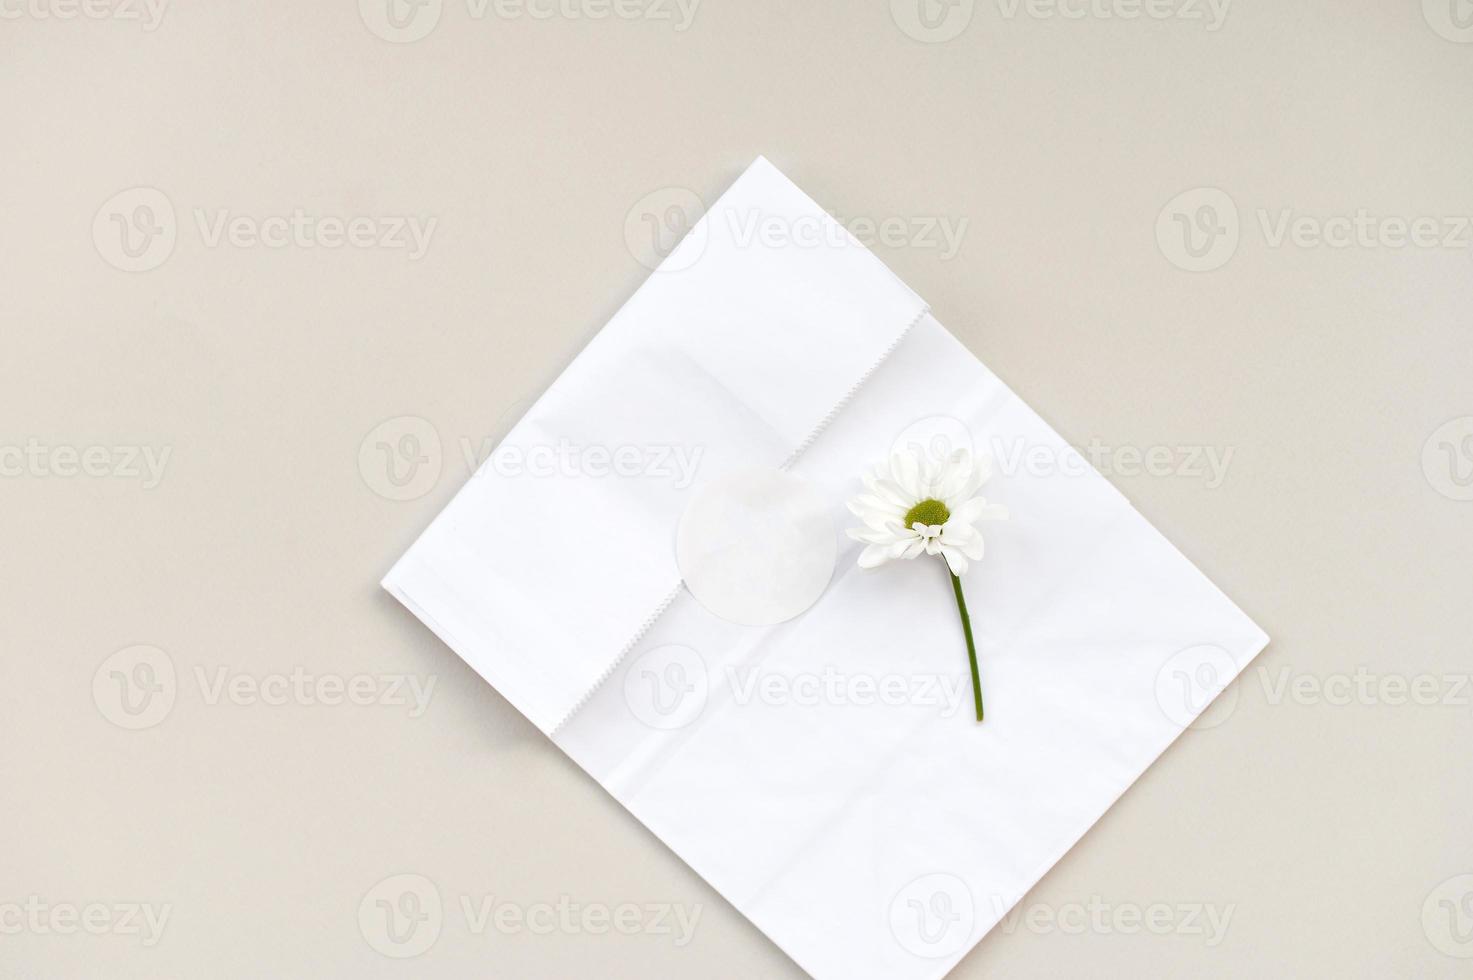 redondo blanco pegatina modelo, redondo etiqueta modelo en Kraft papel regalo bolsa, margarita flor foto